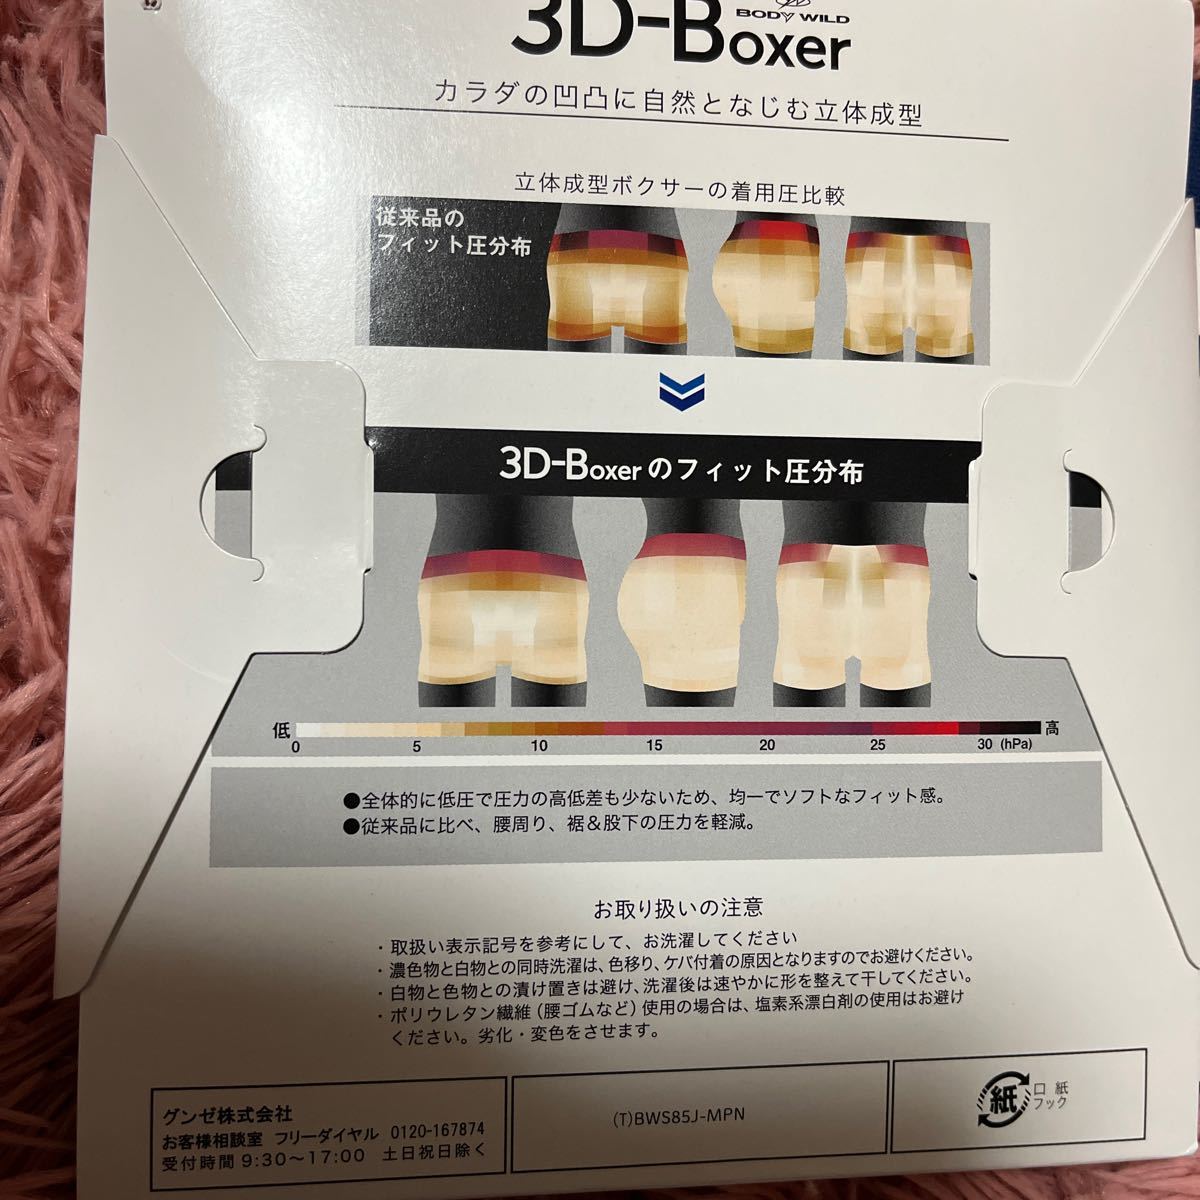 BODY WILD 3D-BOXER ボクサーブリーフ Lサイズ